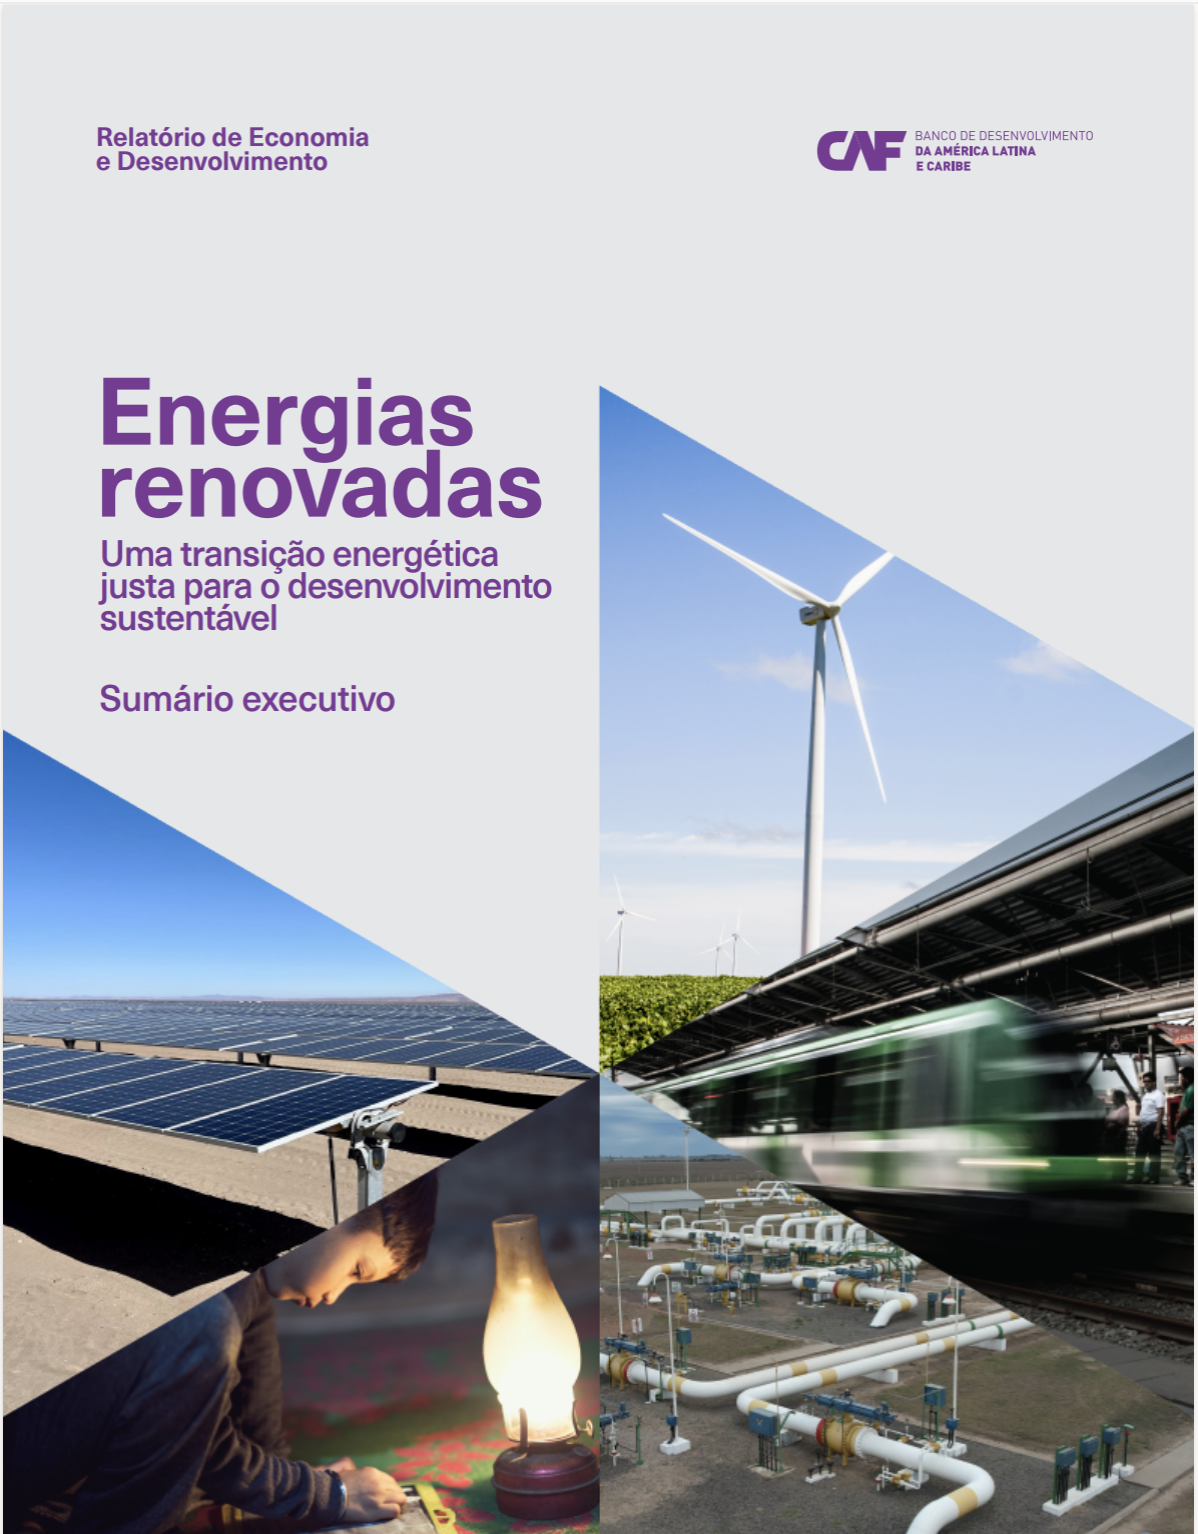 Energias Renovadas: Uma transição energética justa para o desenvolvimento sustentável